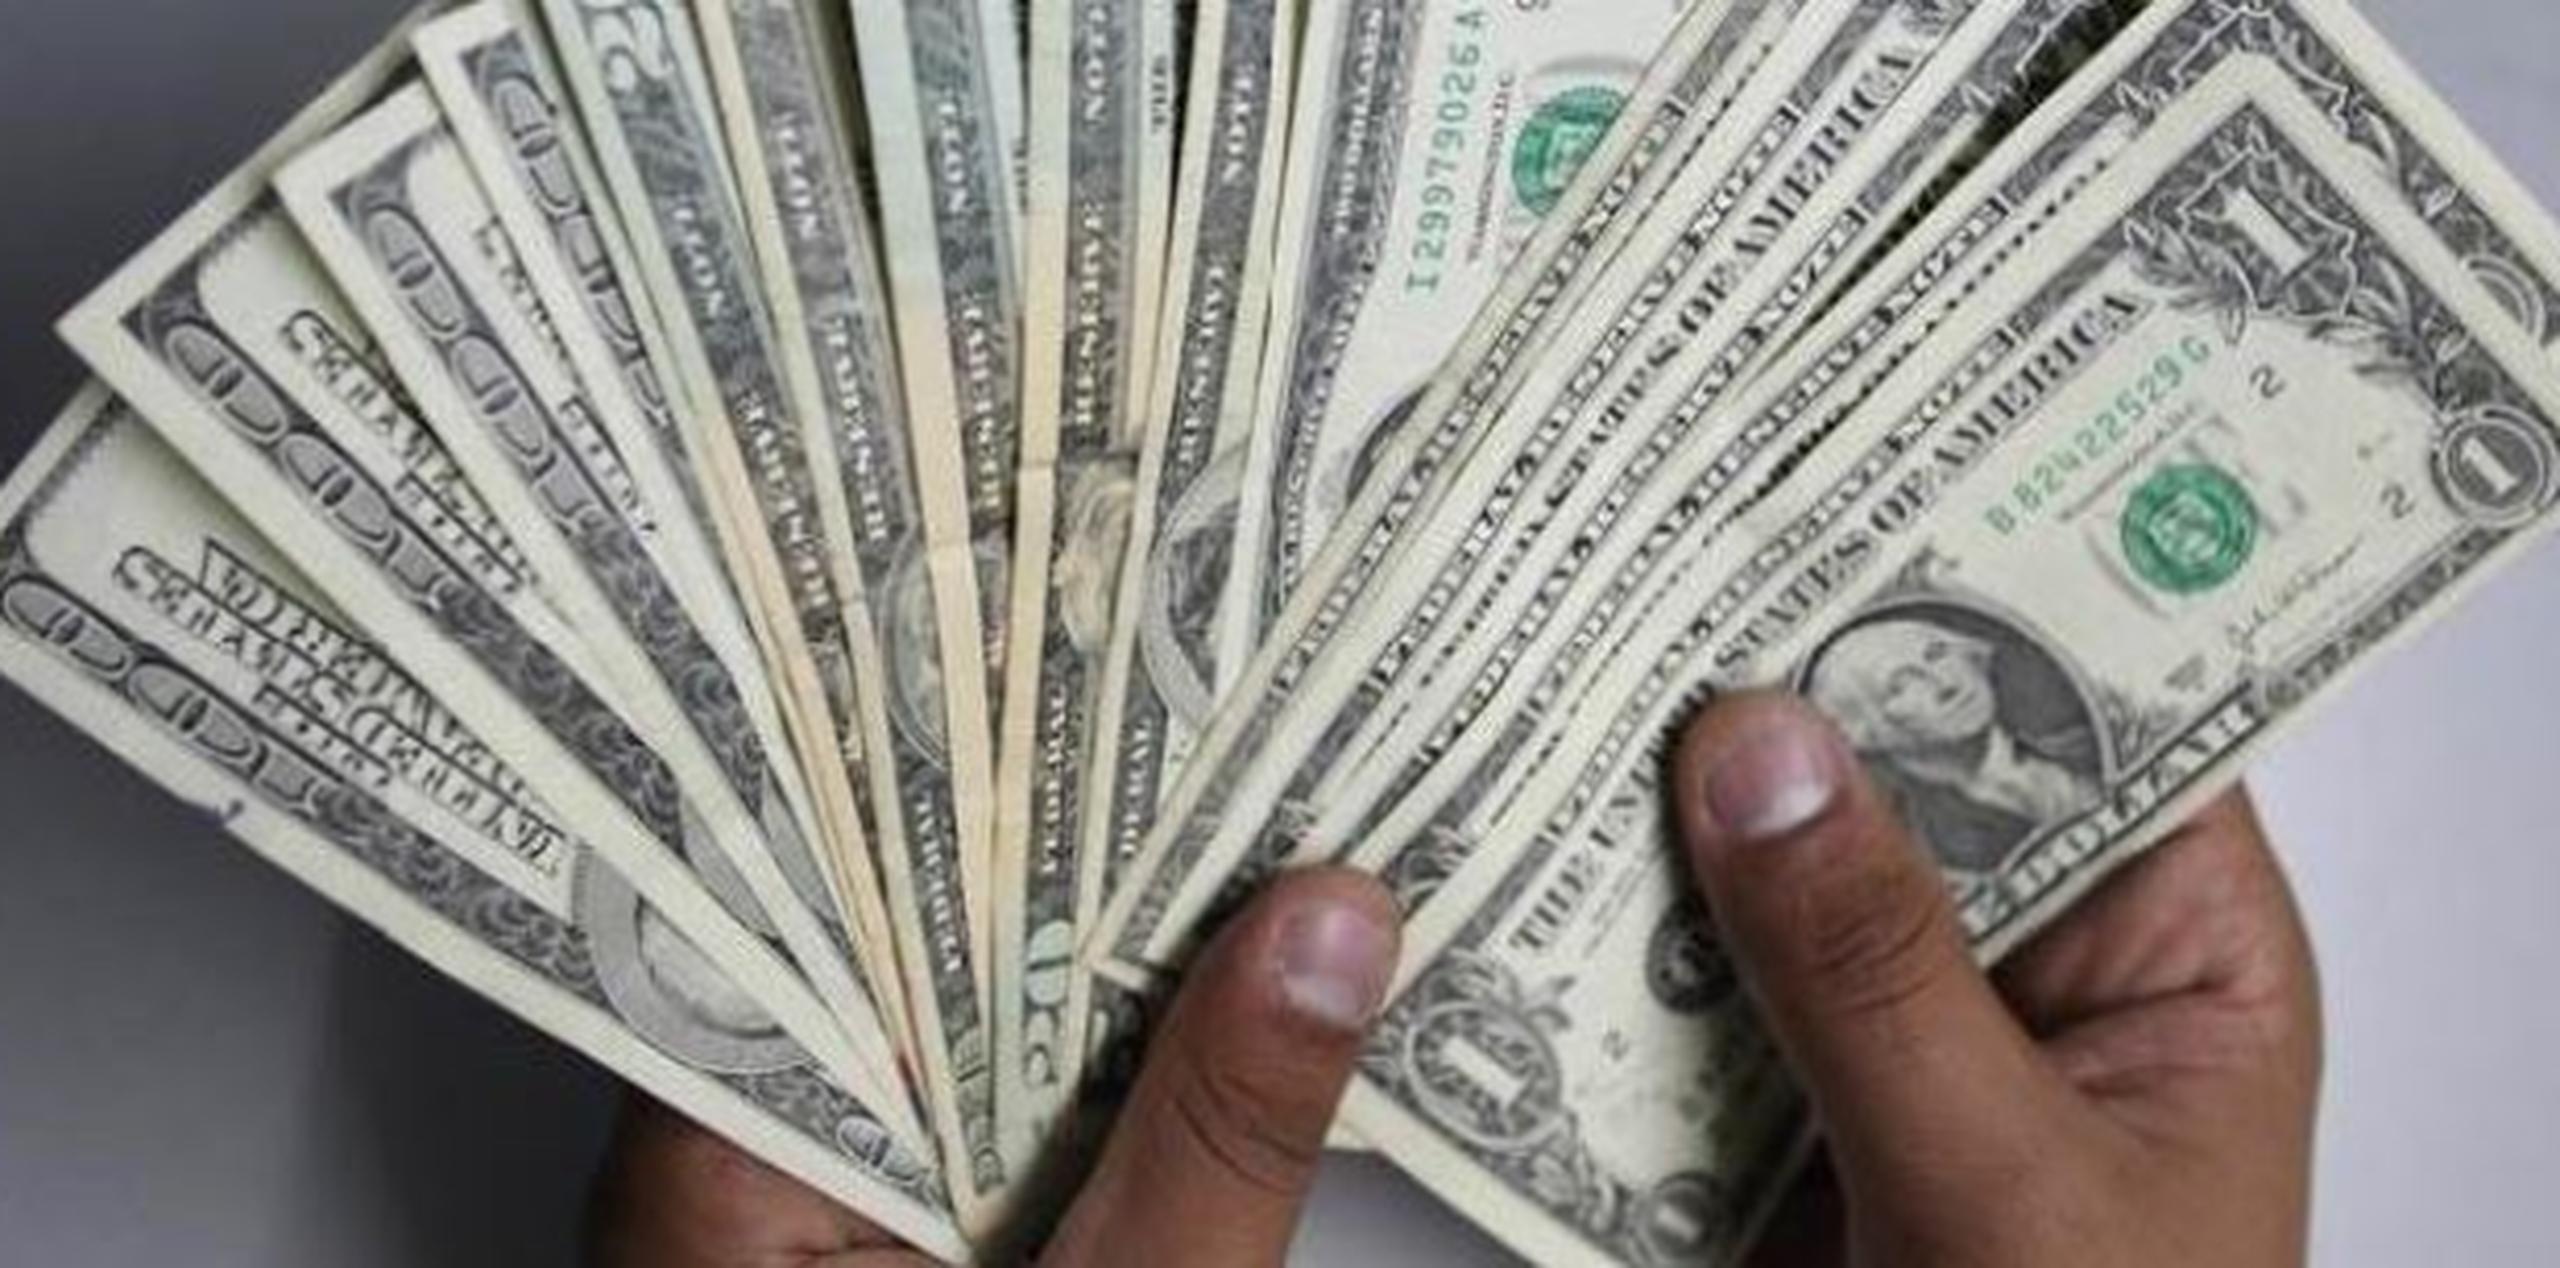 El Distrito de Columbia actualmente tiene un salario mínimo de 10.50 dólares que aumentará a 11.50 en julio bajo una ley firmada en 2014 por el predecesor de Bowser, Vincent Gray. (Archivo)